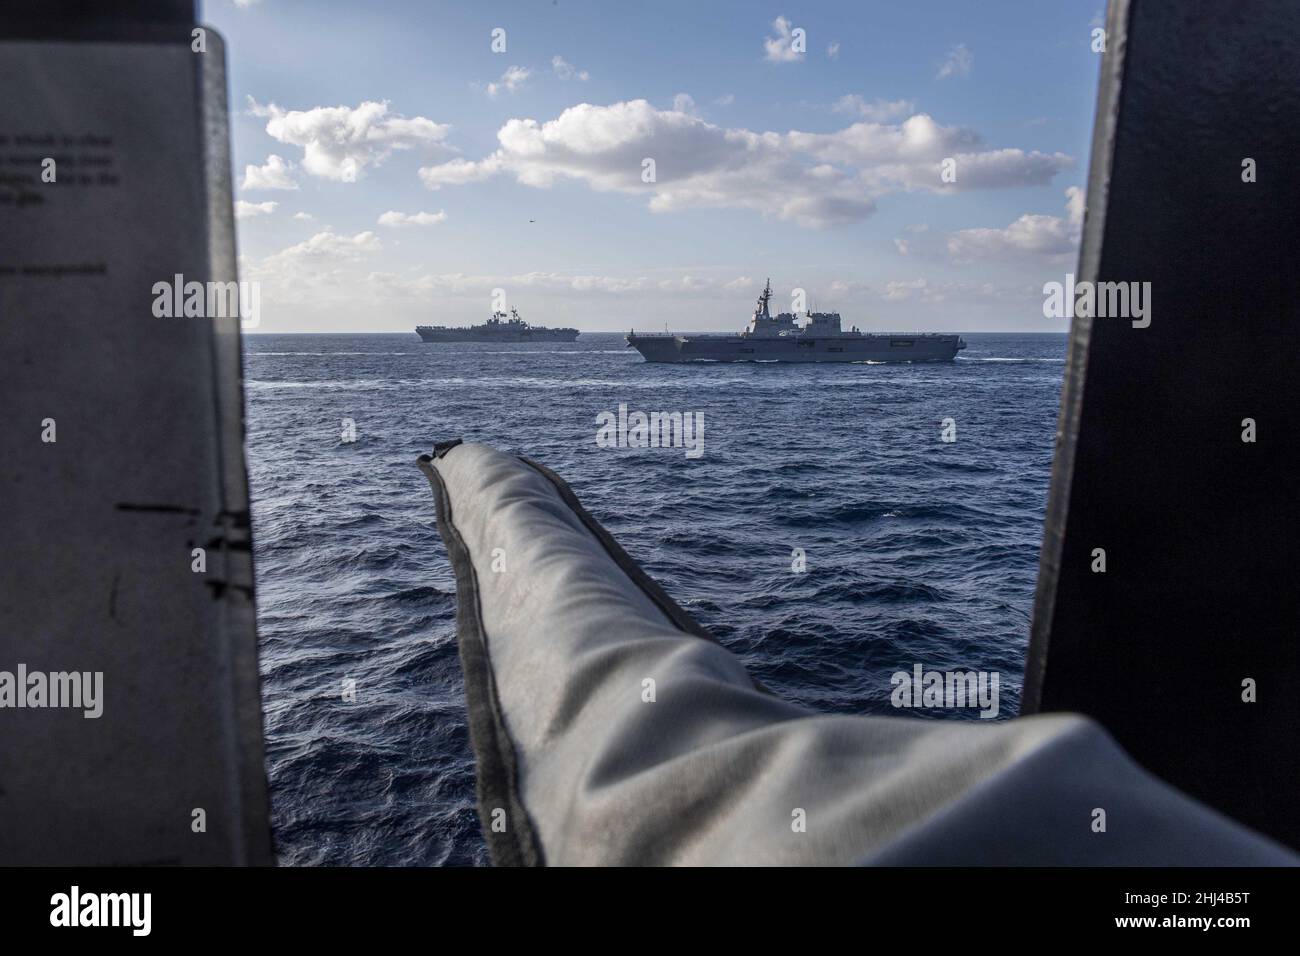 MAR DELLE FILIPPINE (Gen. 22, 2022) la nave d'assalto anfibio di classe Wasp USS Essex (LHD 2), sinistra, e la nave della forza di autodifesa marittima giapponese JS Hyuga (DDH 181) vapore in formazione con la nave d'assalto anfibio dispiegata in avanti USS America (LHA 6). Operando come parte della U.S. Pacific Fleet, Essex e America, insieme a JS Hyuga, stanno conducendo corsi di formazione per preservare e proteggere una regione indopacifica libera e aperta. (Foto di Specialista di comunicazione di massa 3rd classe Theodore Lee) Foto Stock